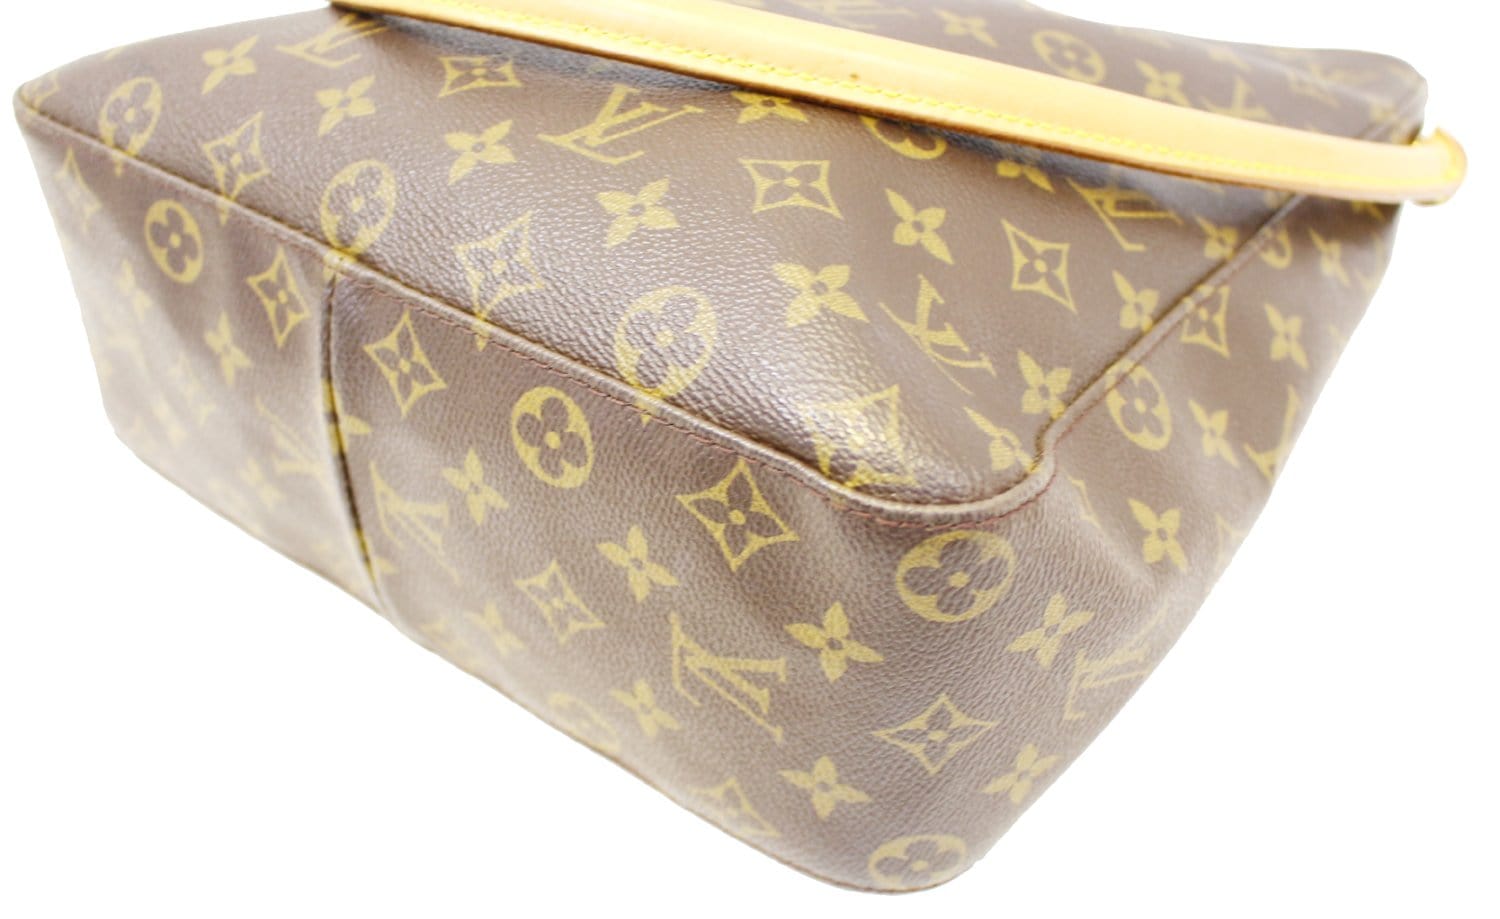 Brown Louis Vuitton Monogram Looping GM Shoulder Bag – Designer Revival